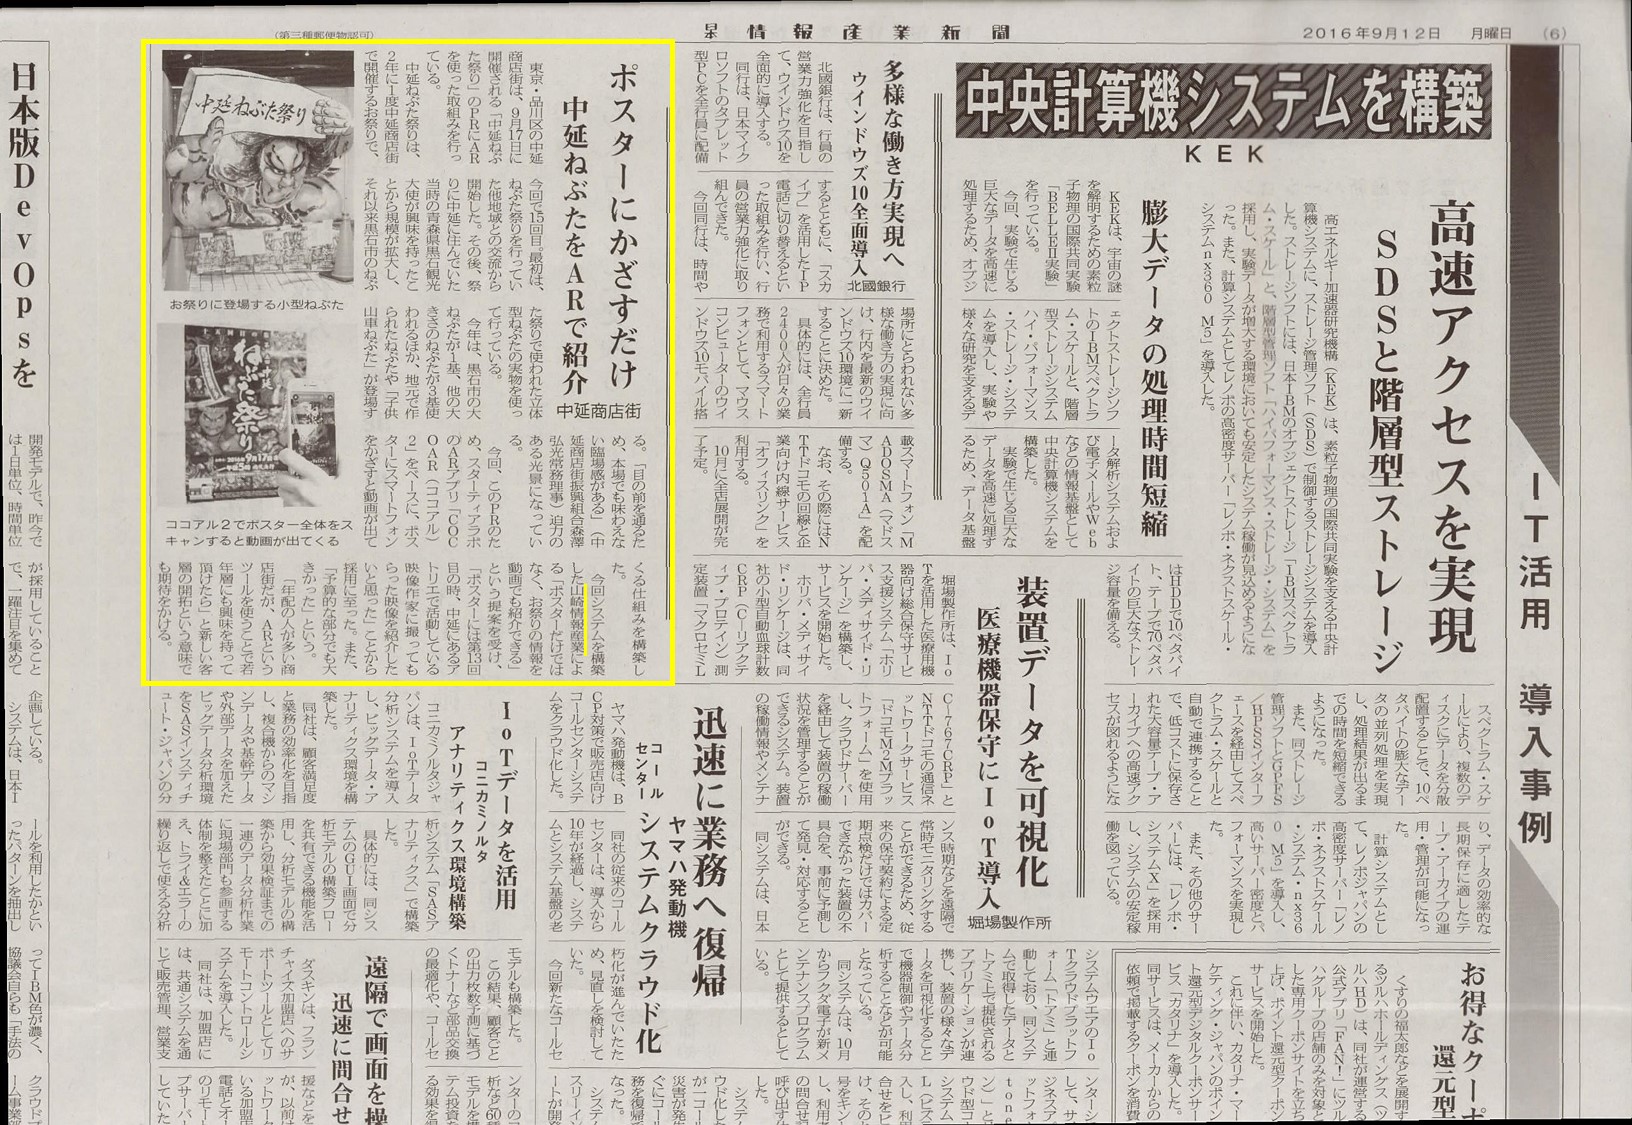 16年9月12日（月）日本情報産業新聞に、山崎情報産業株式会社が提供するARに関する記事が掲載されました。